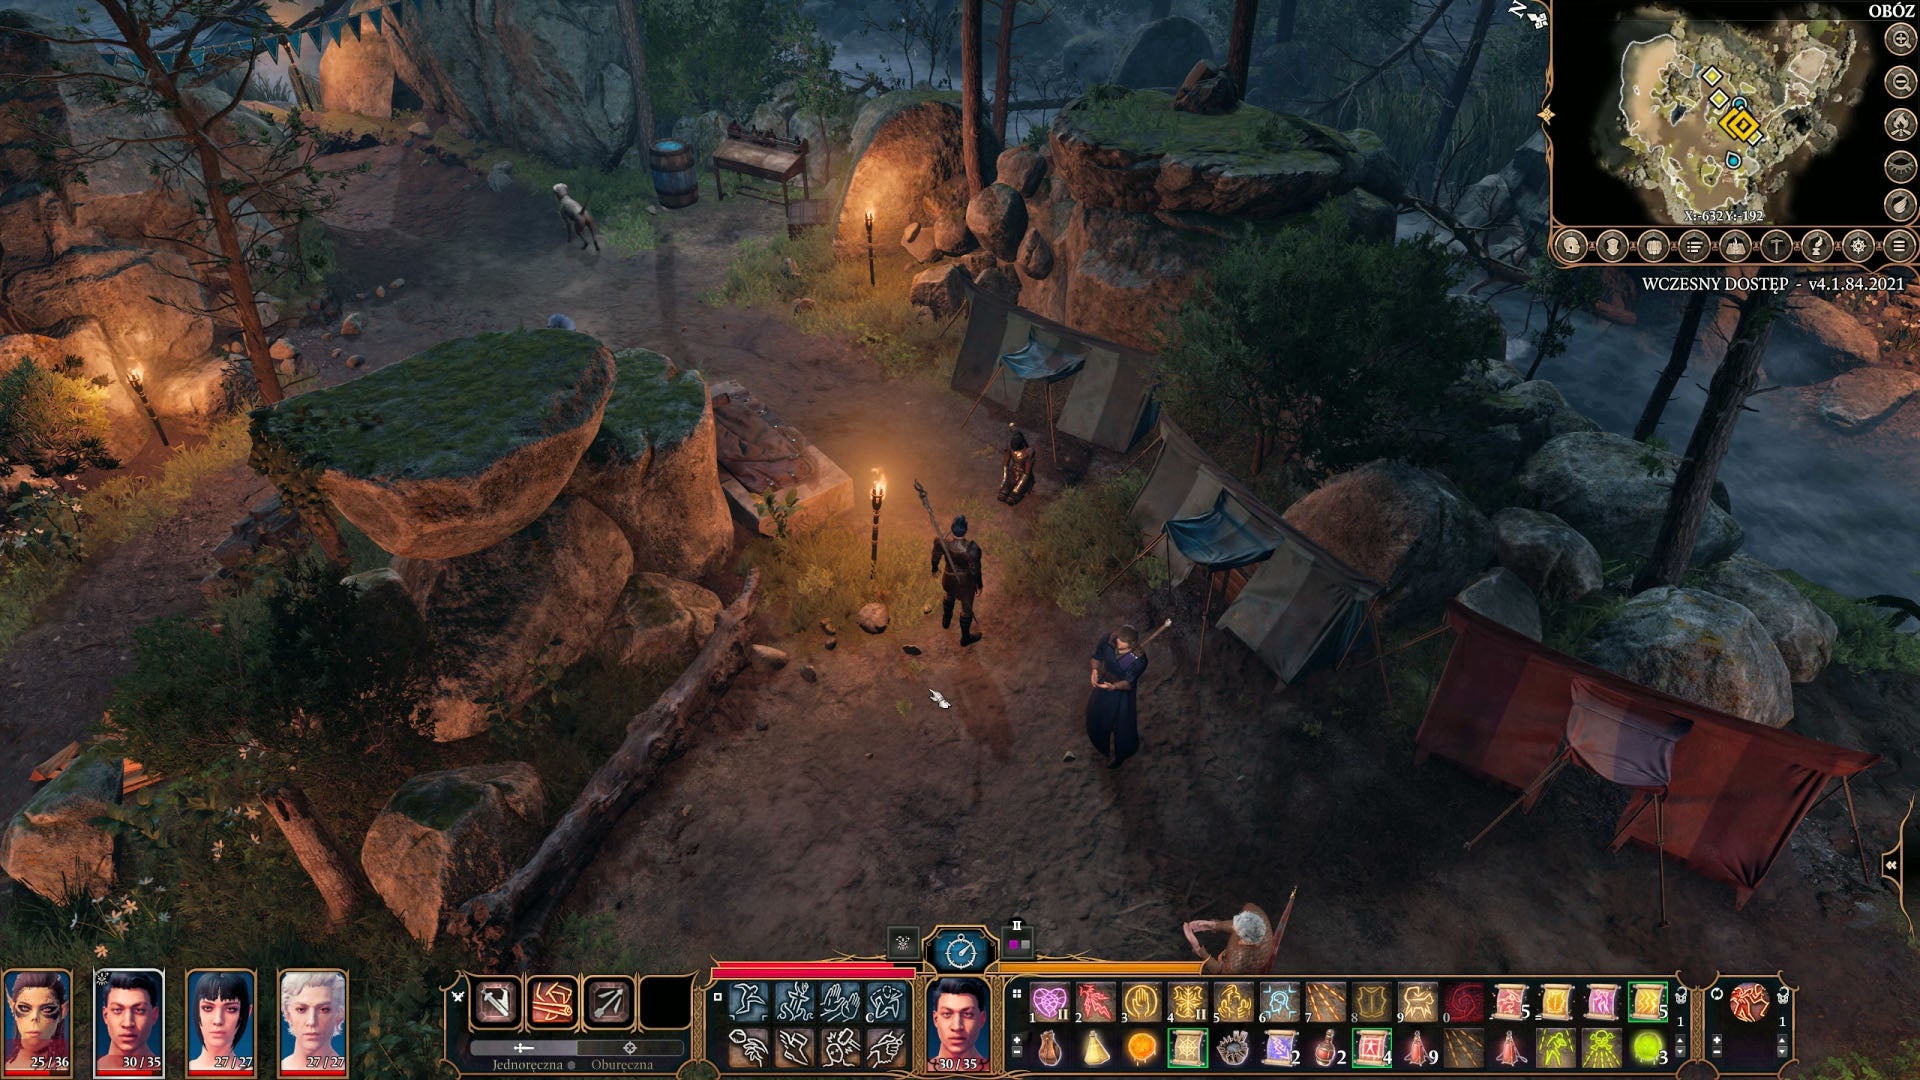 Obrazki dla Baldur's Gate 3 - towarzysze w grze